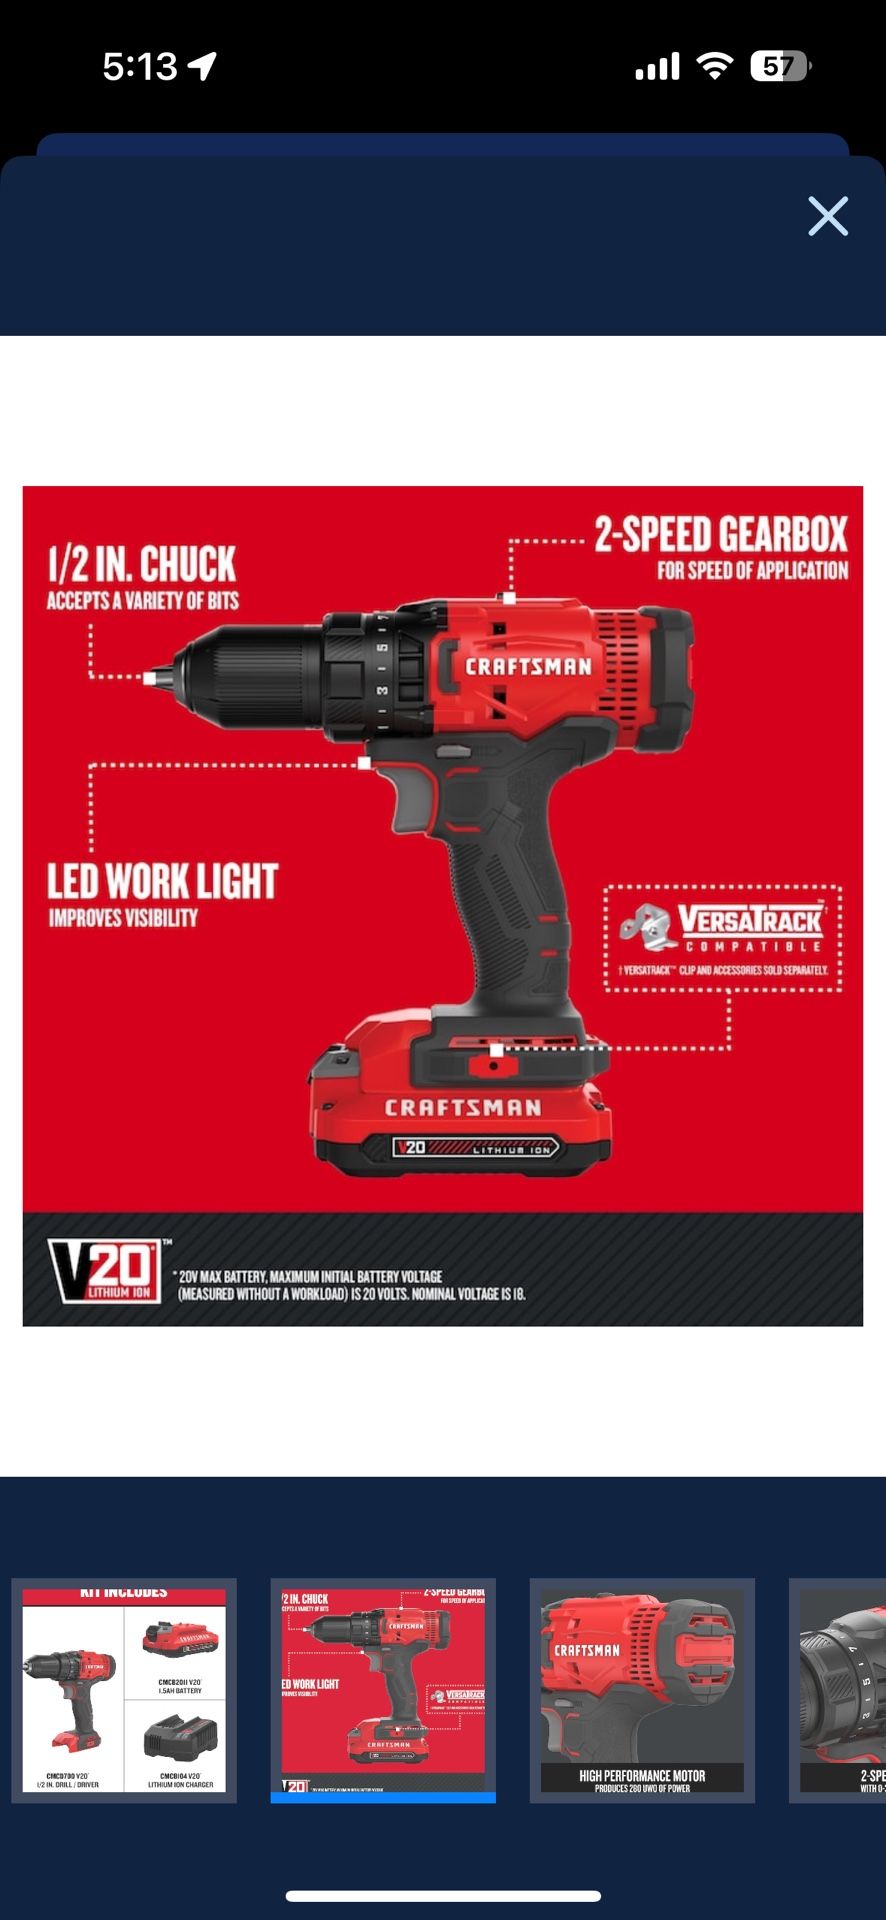 V20-volt Max 1/2-in Cordless Drill 